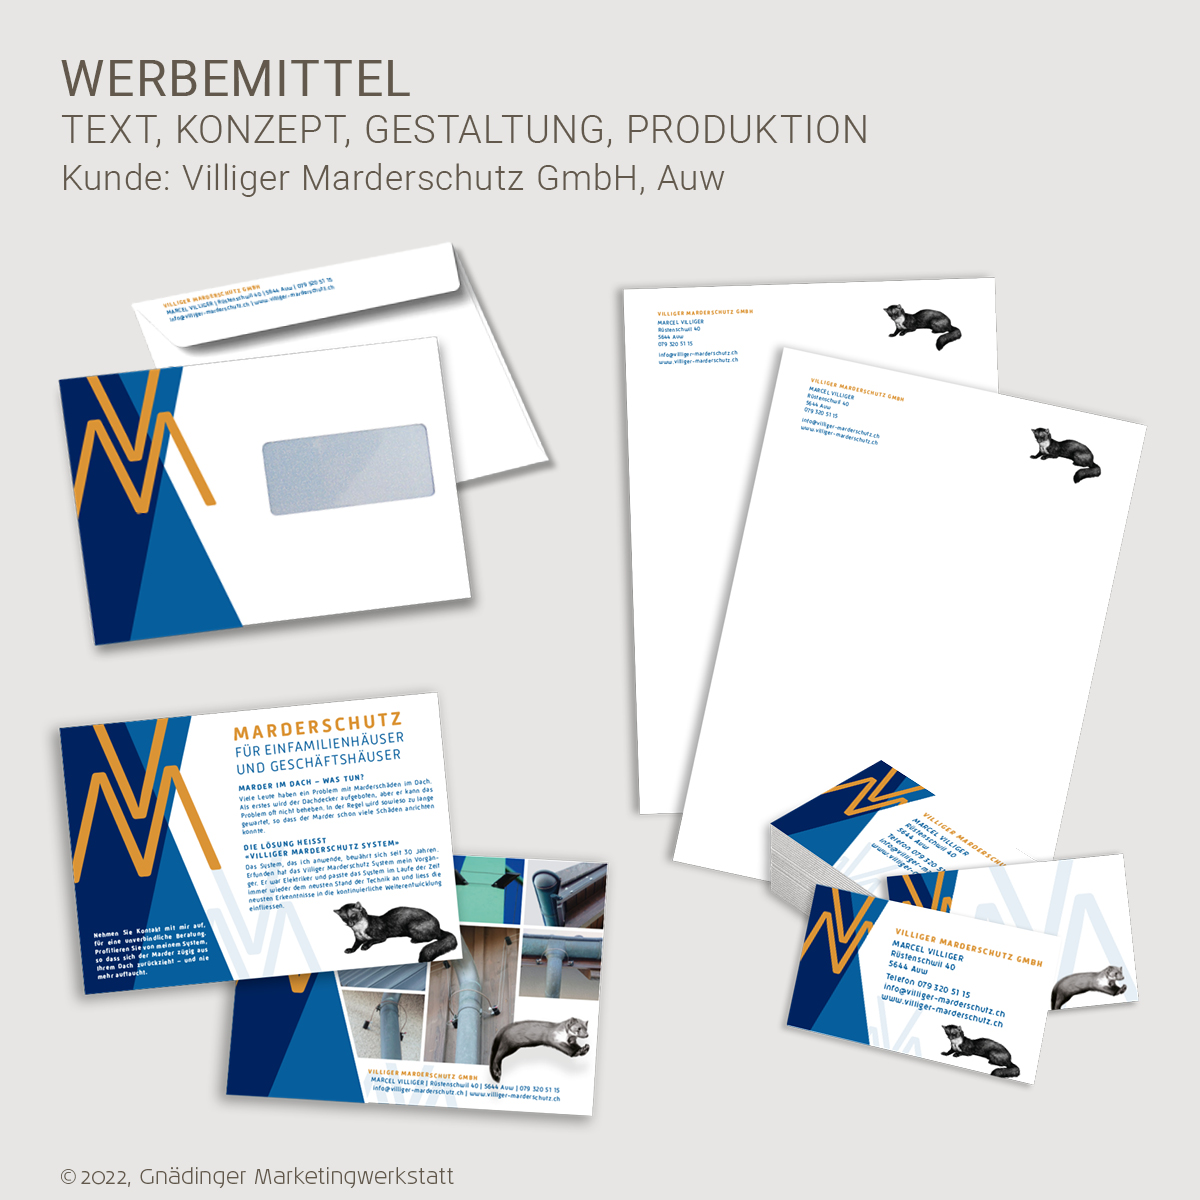 WEB2_GMW_Projekt_Villiger Marderschutz_Werbemittel_10-2022